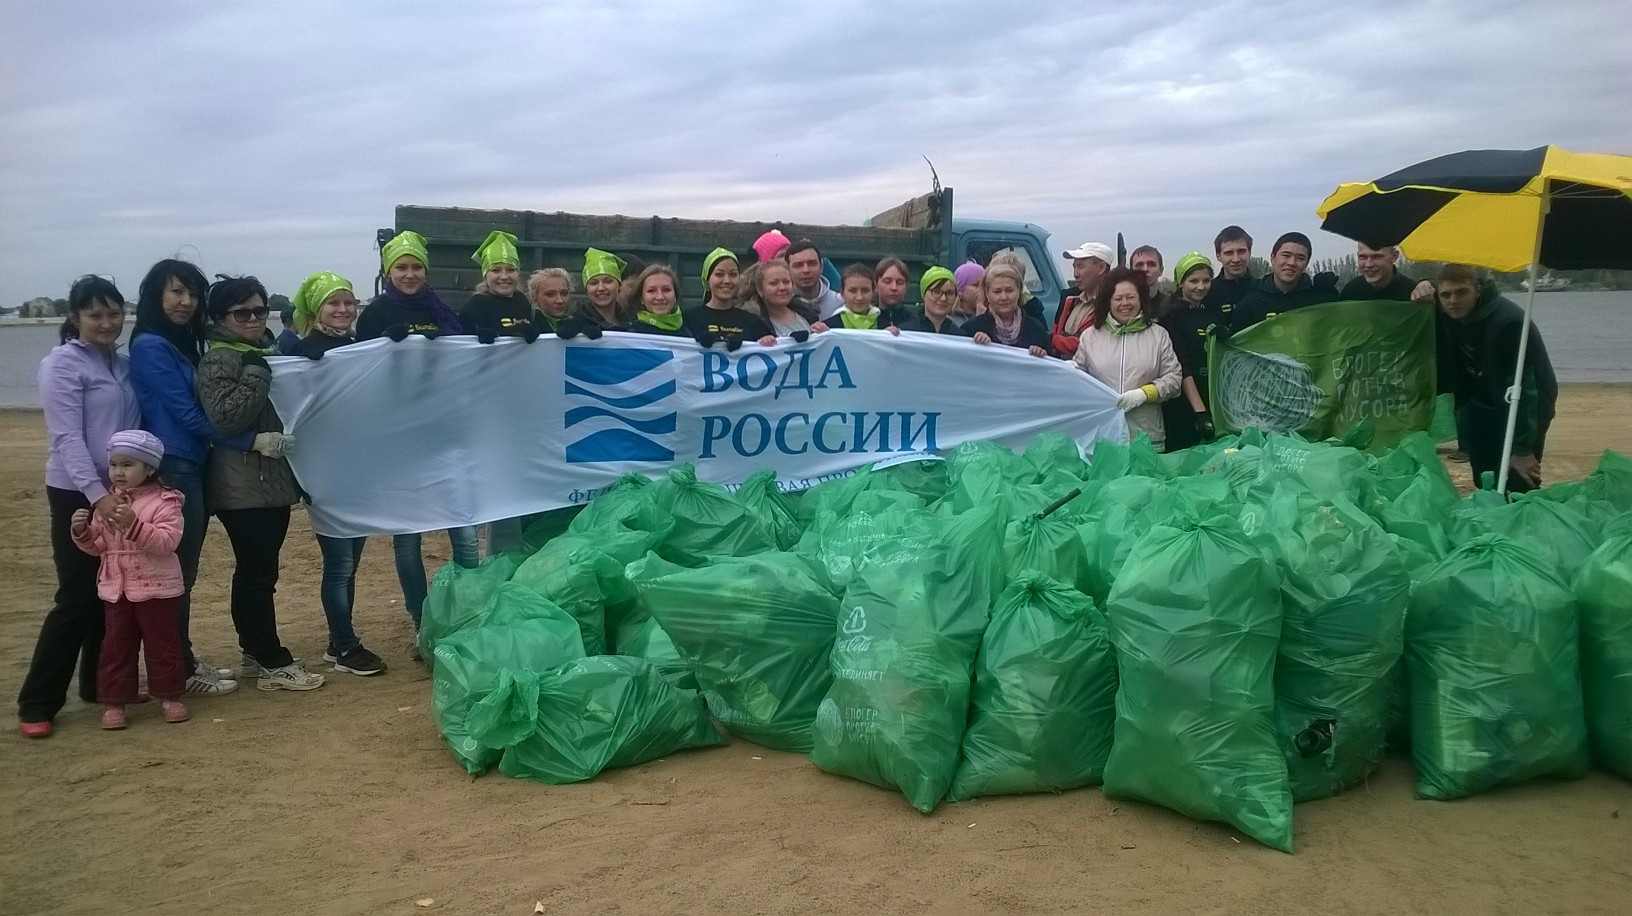 images novosti2 Proisshestviya BlogerProtiv wp 20140920 013 Акция "Блогер против мусора" успешно прошла в Астрахани